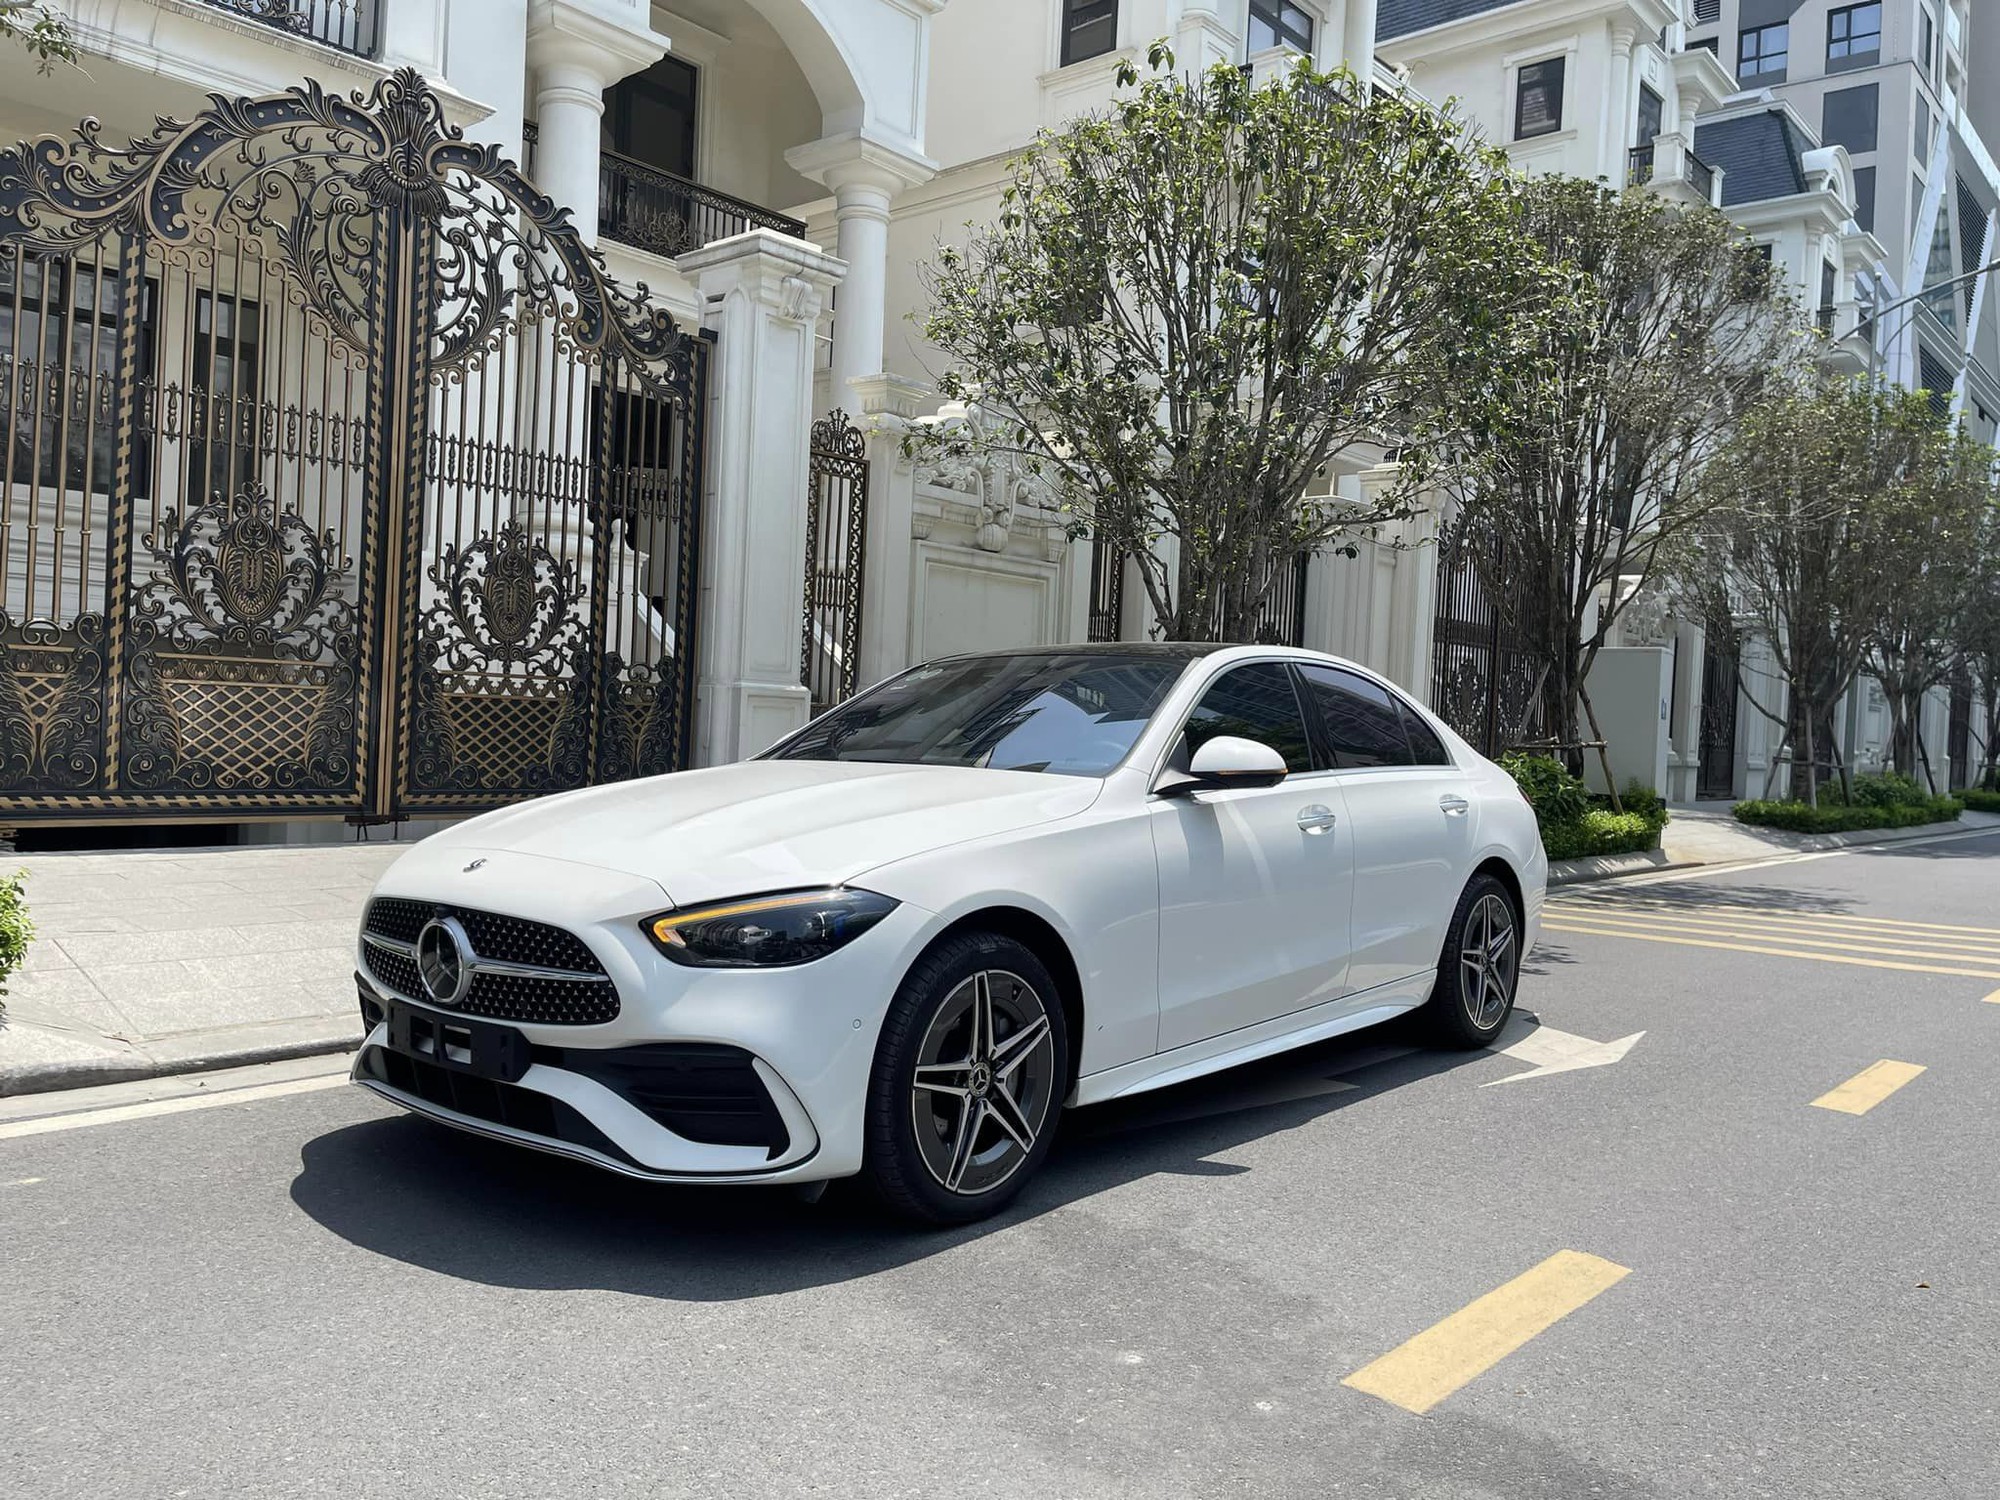 Mercedes-AMG tiếp tục triệu hồi xe vì lỗi nối dây điện, có mẫu đang bán ở Việt Nam- Ảnh 2.